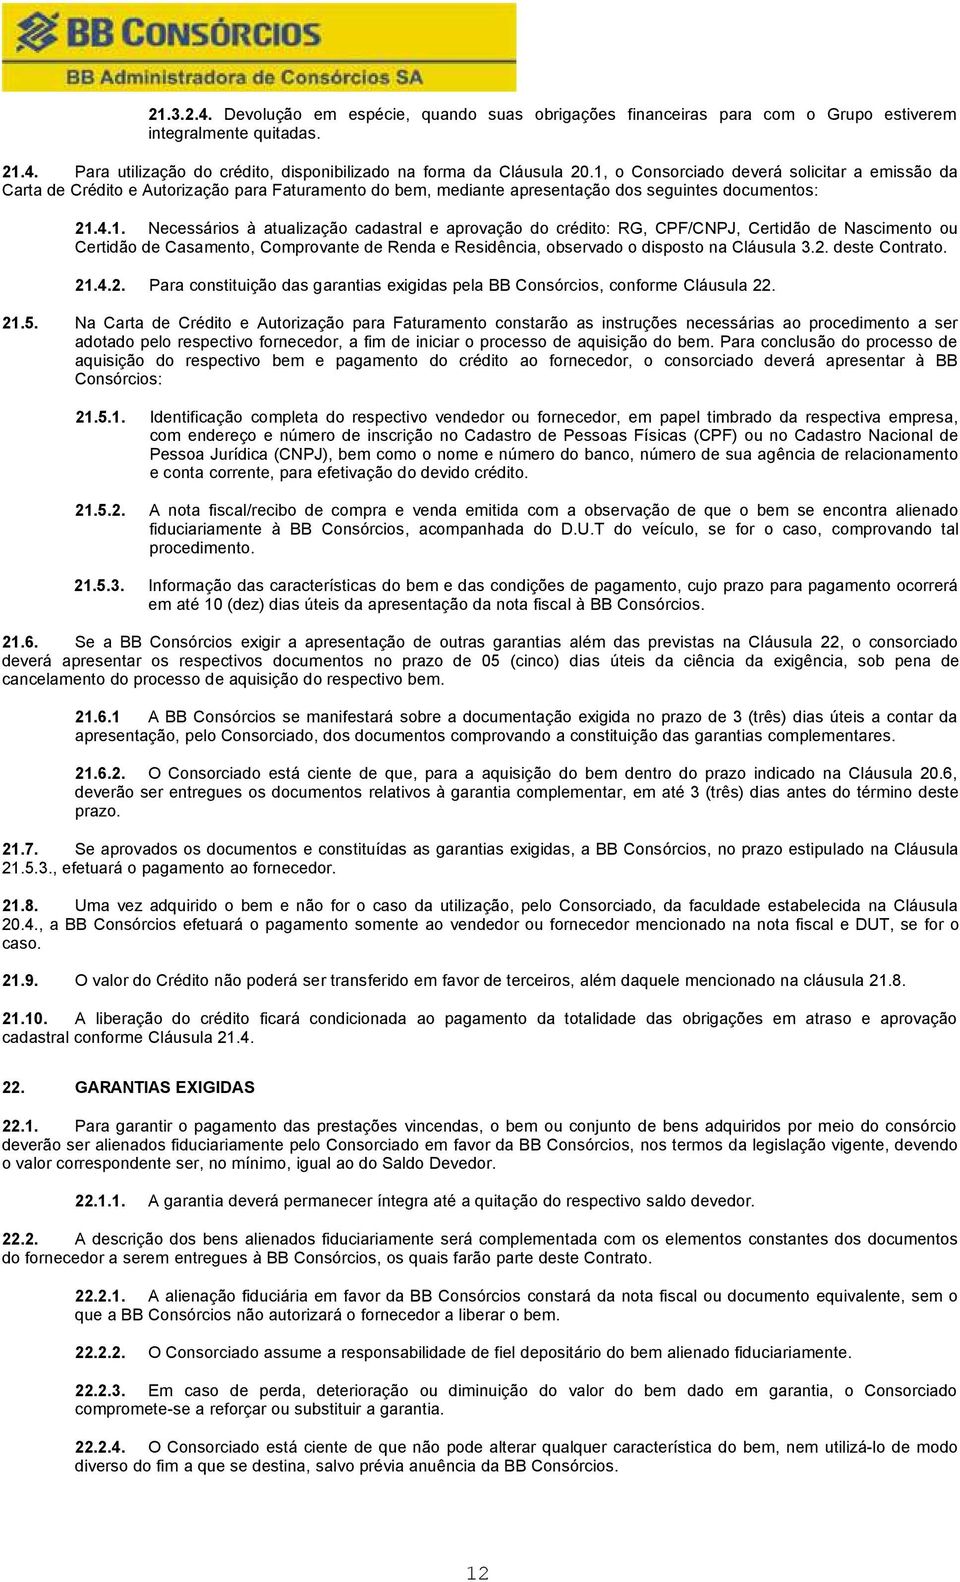 2. deste Contrato. 21.4.2. Para constituição das garantias exigidas pela BB Consórcios, conforme Cláusula 22. 21.5.